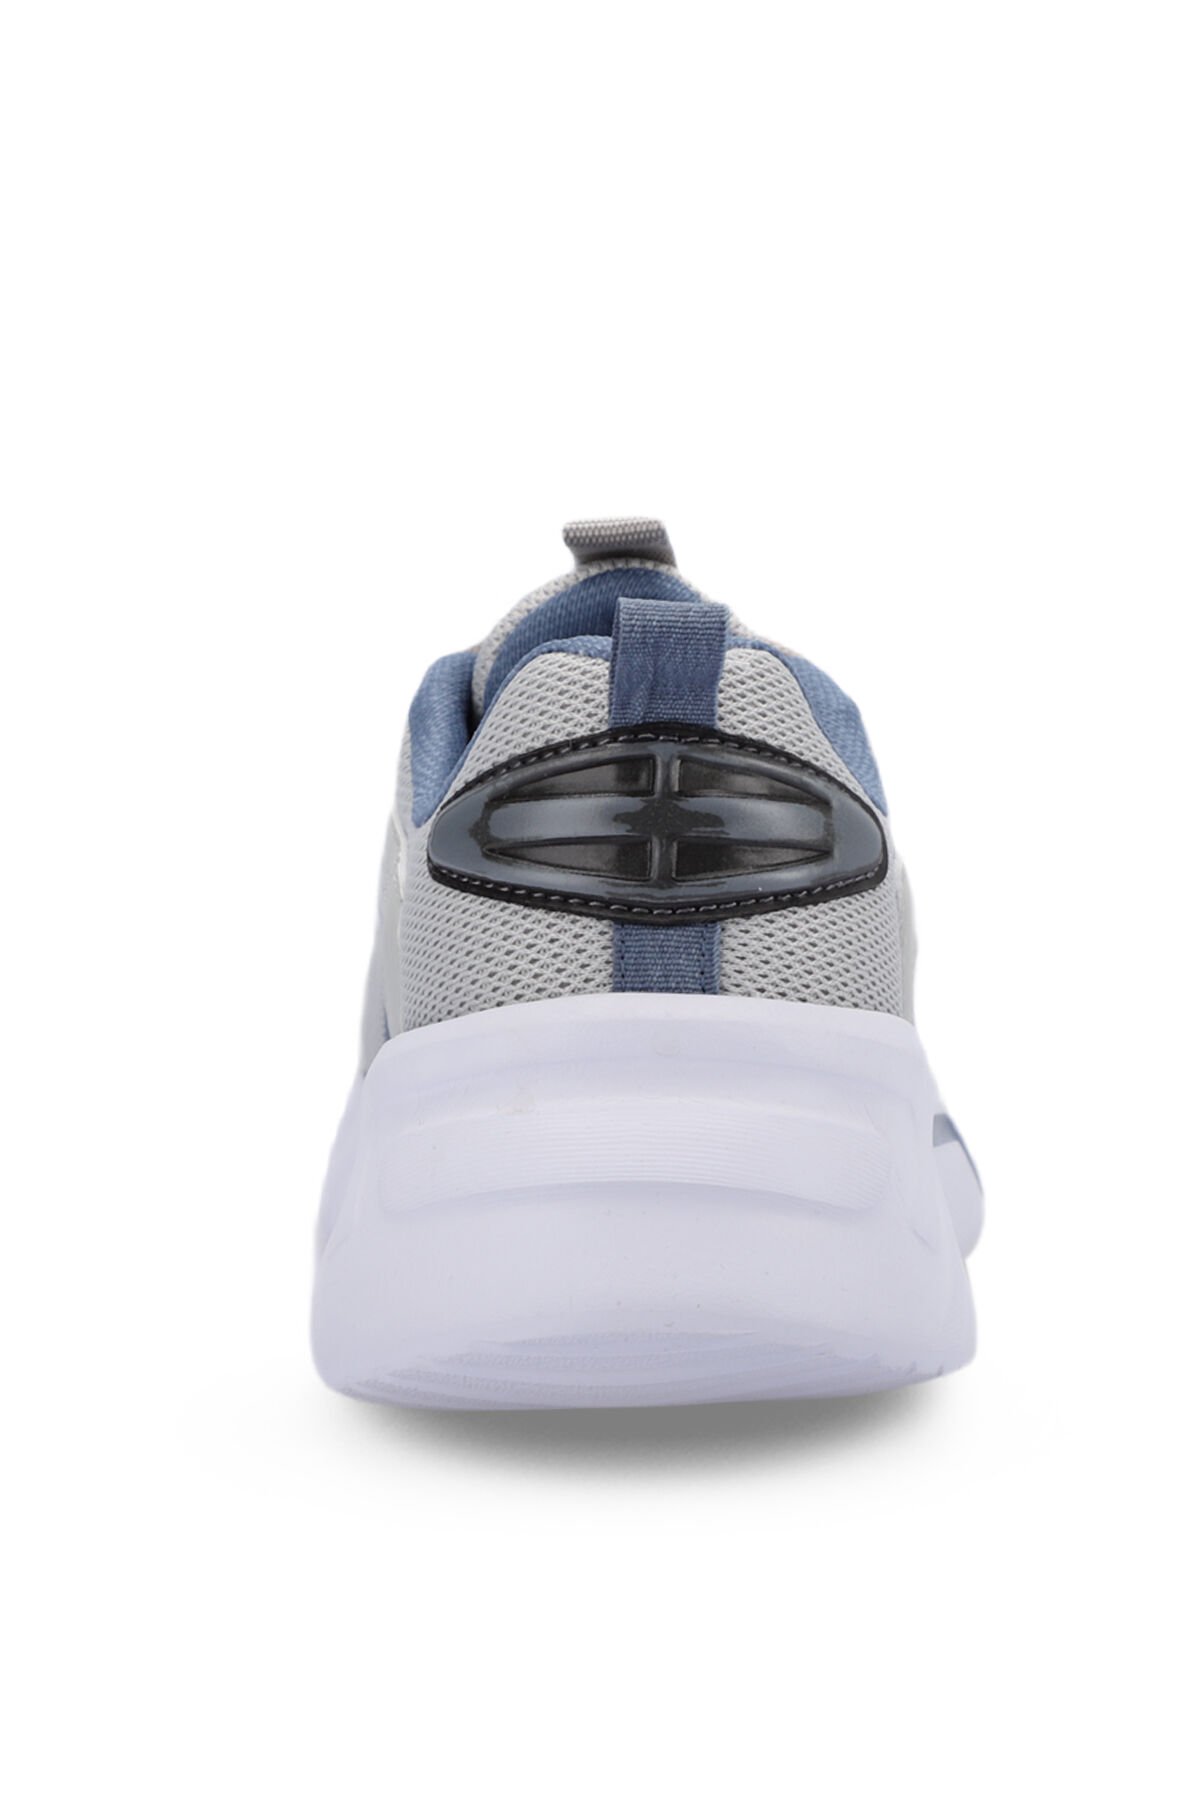 FARON Sneaker Kadın Ayakkabı Gri - Thumbnail